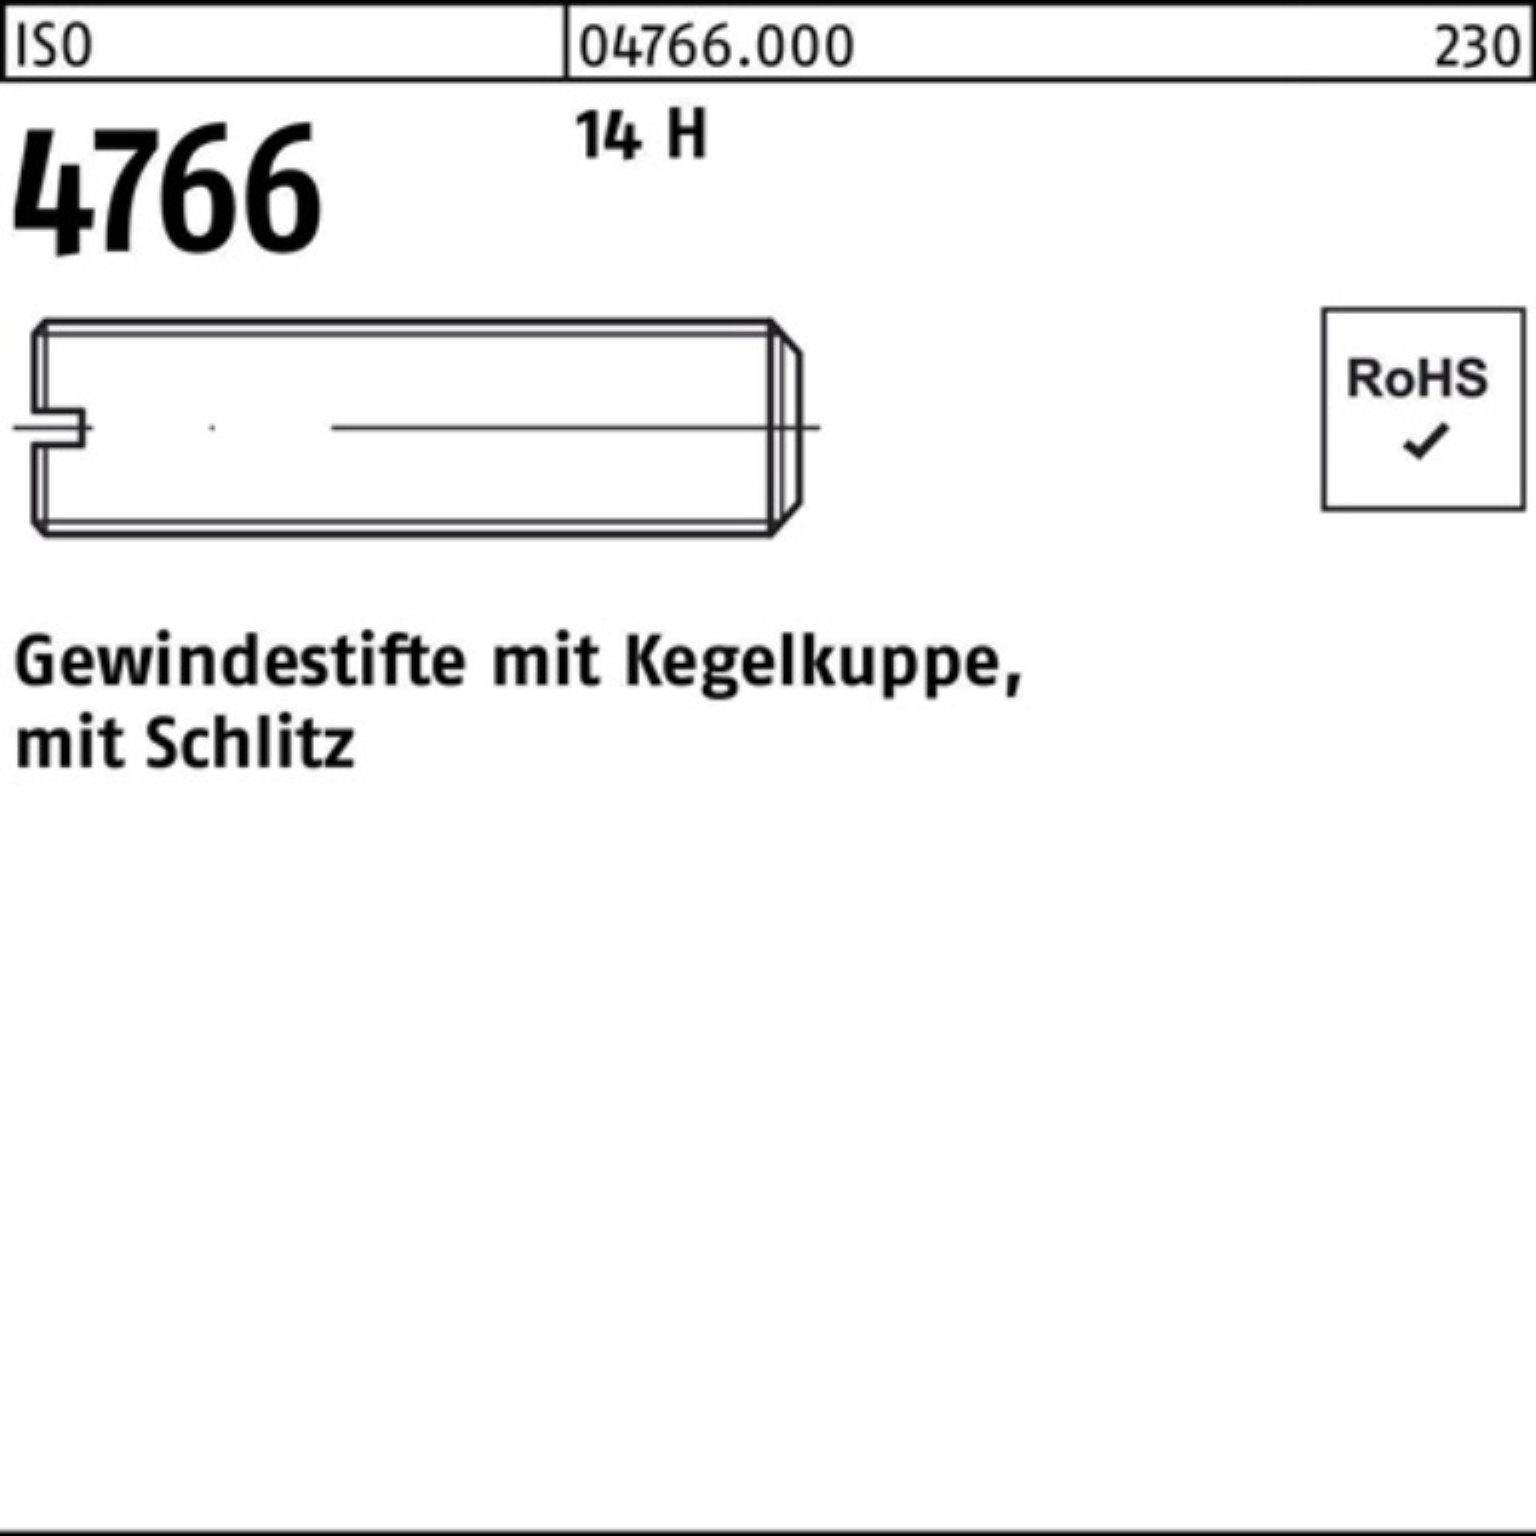 H 14 4766 ISO Kegelkuppe/Schlitz Reyher 5 1000er Gewindebolzen 1000 Gewindestift S M3x Pack